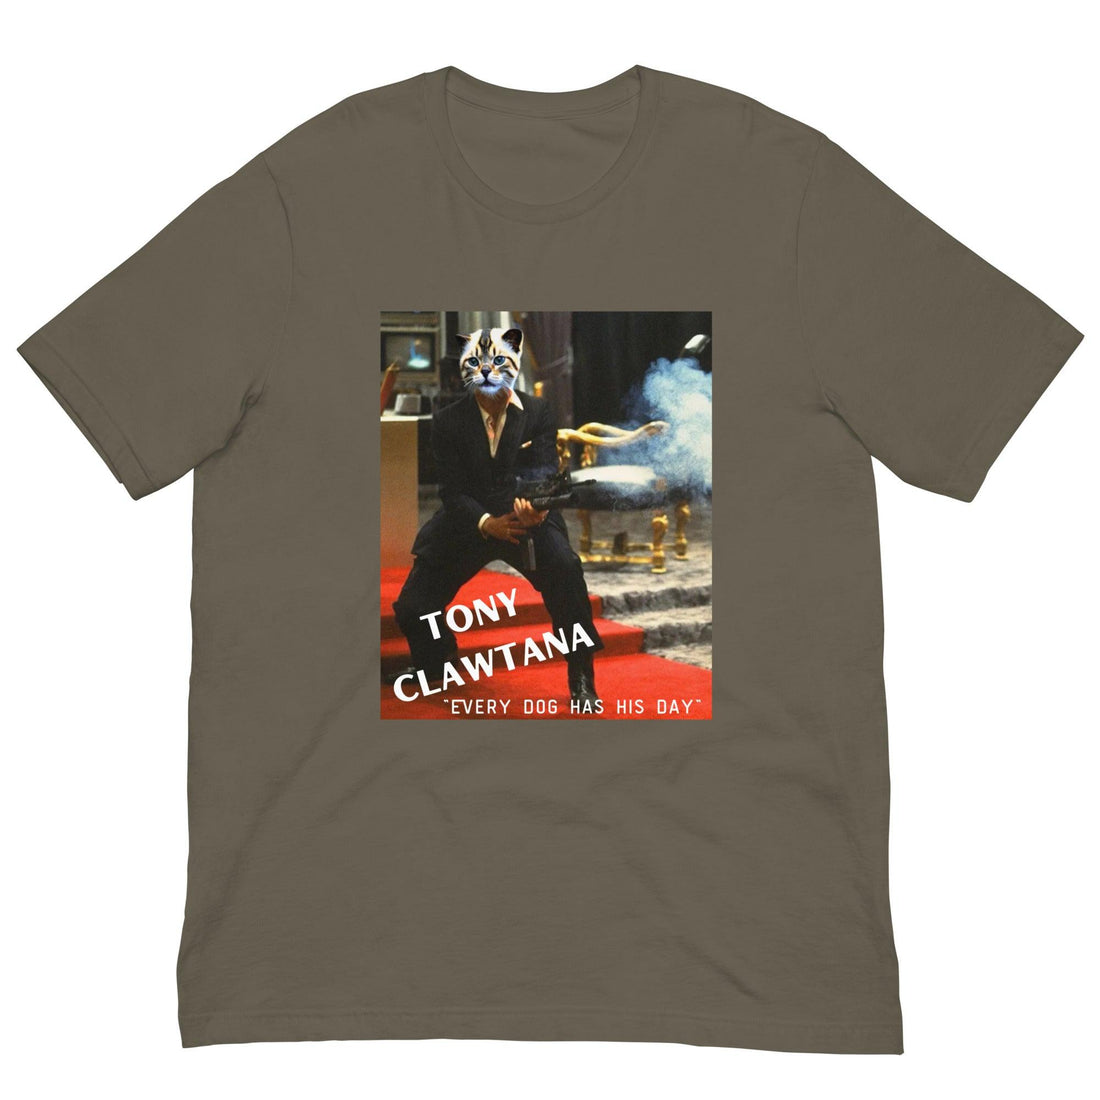 Tony Clawtana Cat Shirt - Cat Shirts USA